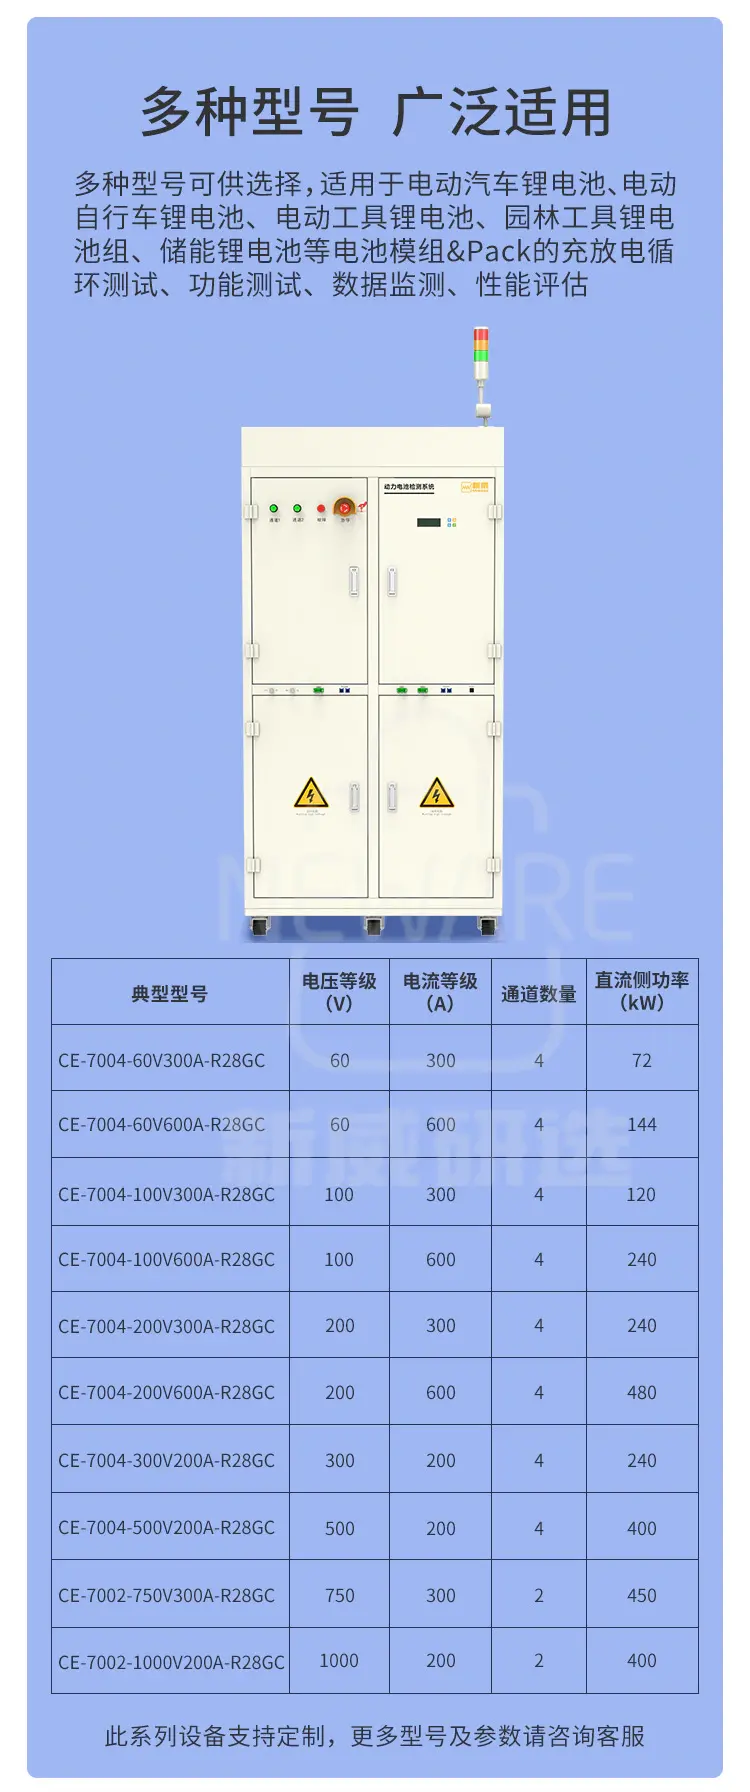 模组&Pack 低频隔离电池检测系统 CE-7000-R28GC商品介绍12